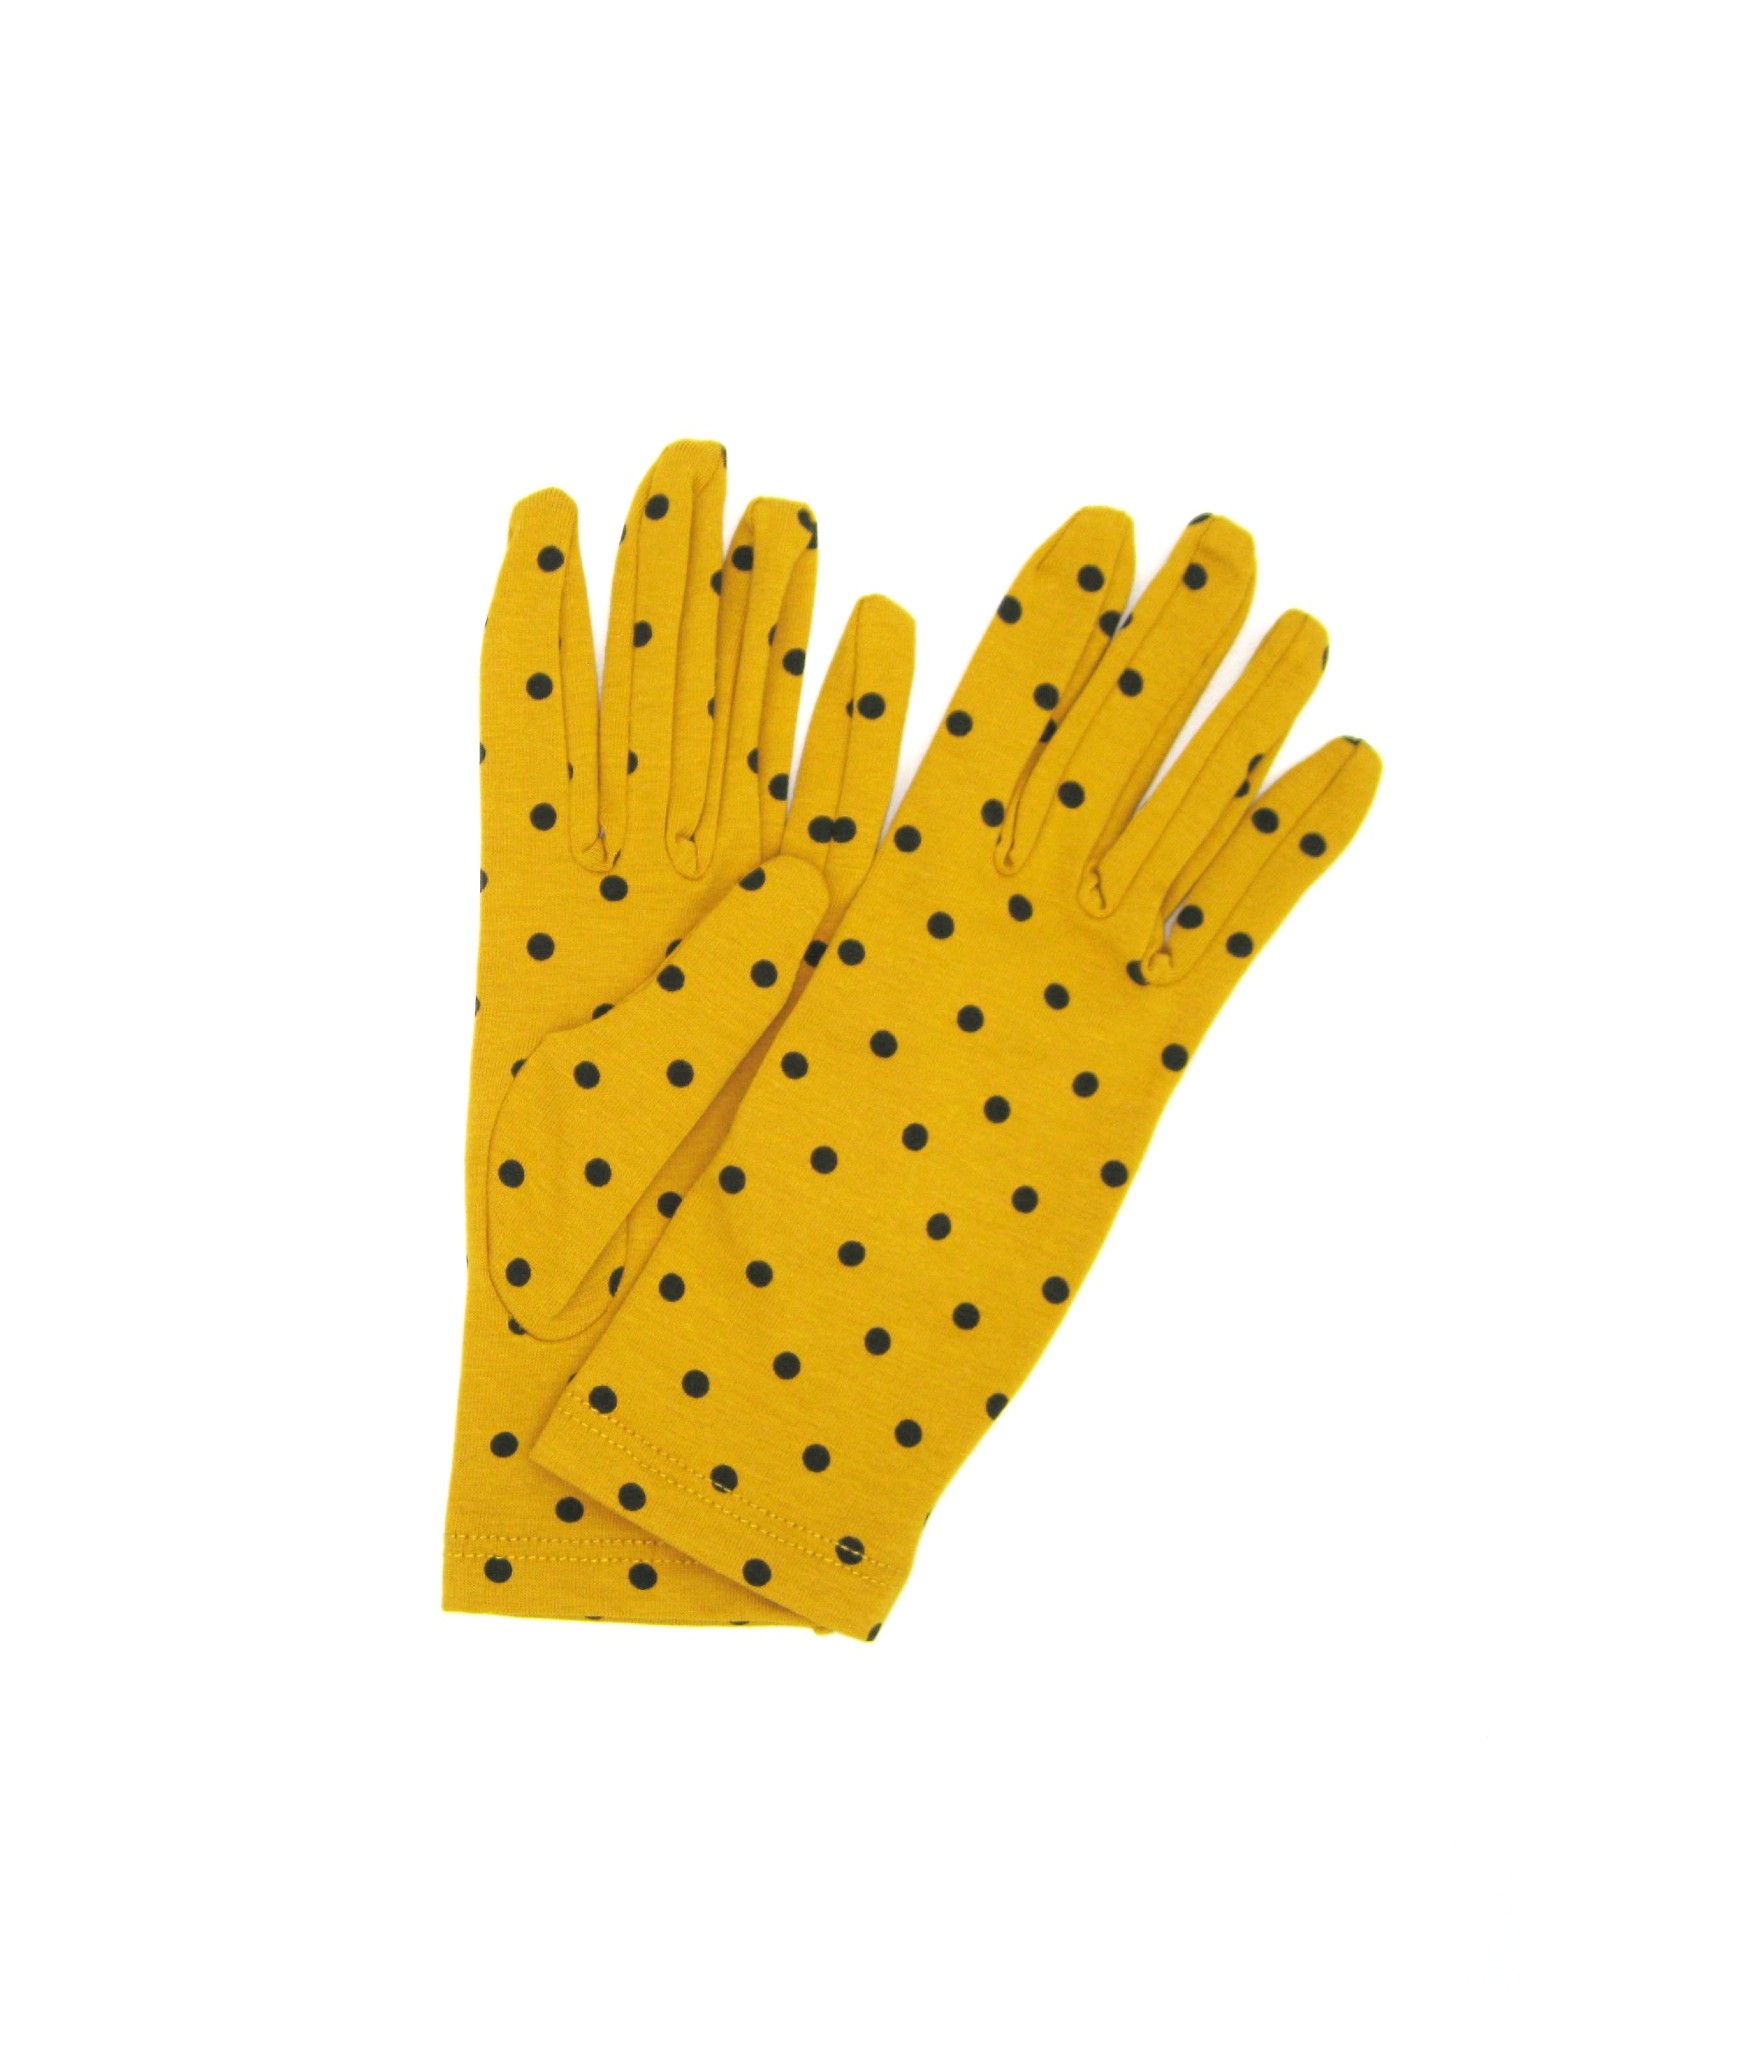 Damen Textil Baumwoll-handschuhe mit Tupfen Ockergelb/Pois